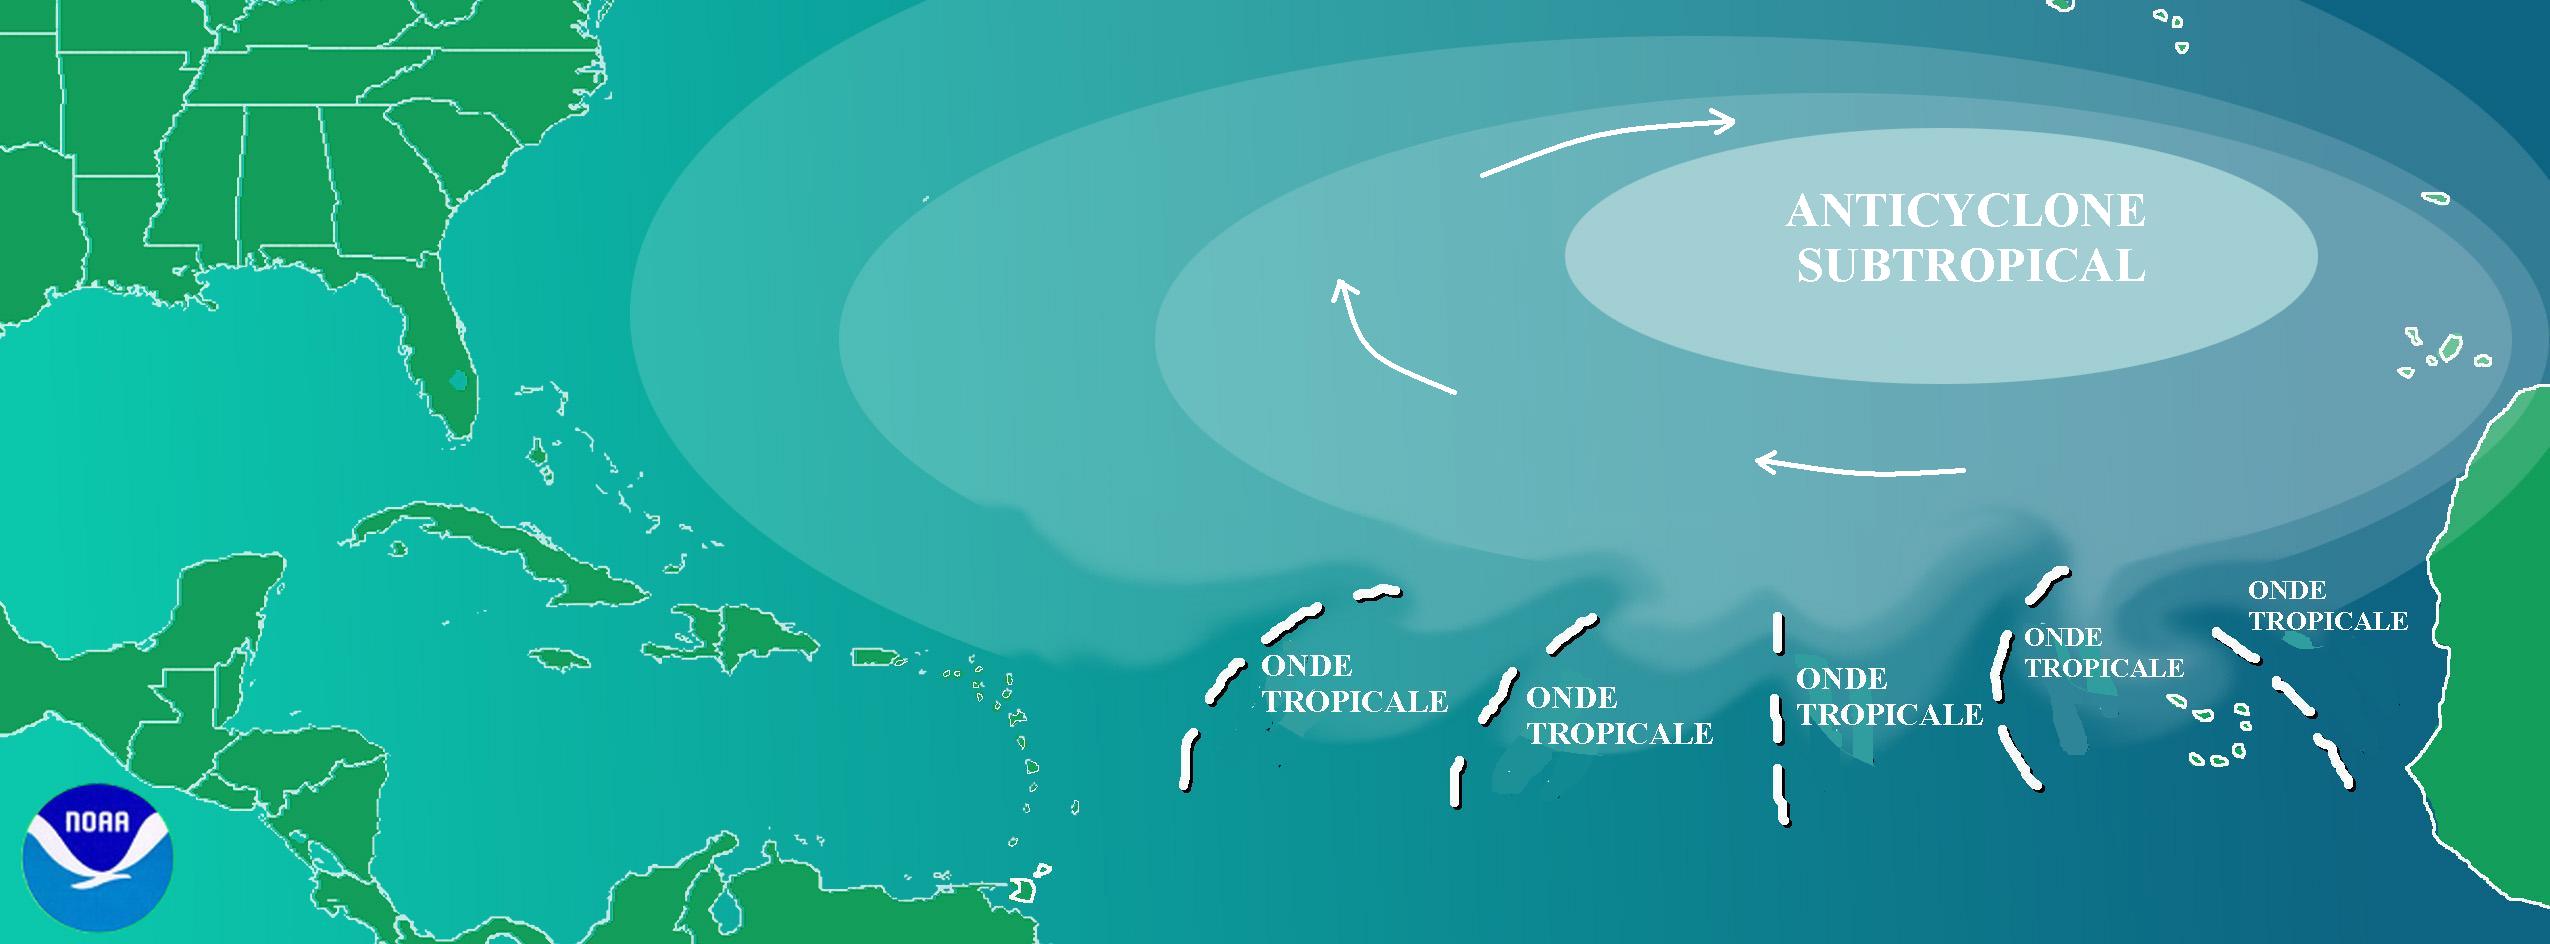 Un anticyclone subtropical peut avoir une amplitude de plusieurs milliers de kilomètres. C'est le cas de celui des Açores qui maintient le beau temps sur le sud de la France durant l’été. © Pierre_cb via NOAA, Wikipédia, DP